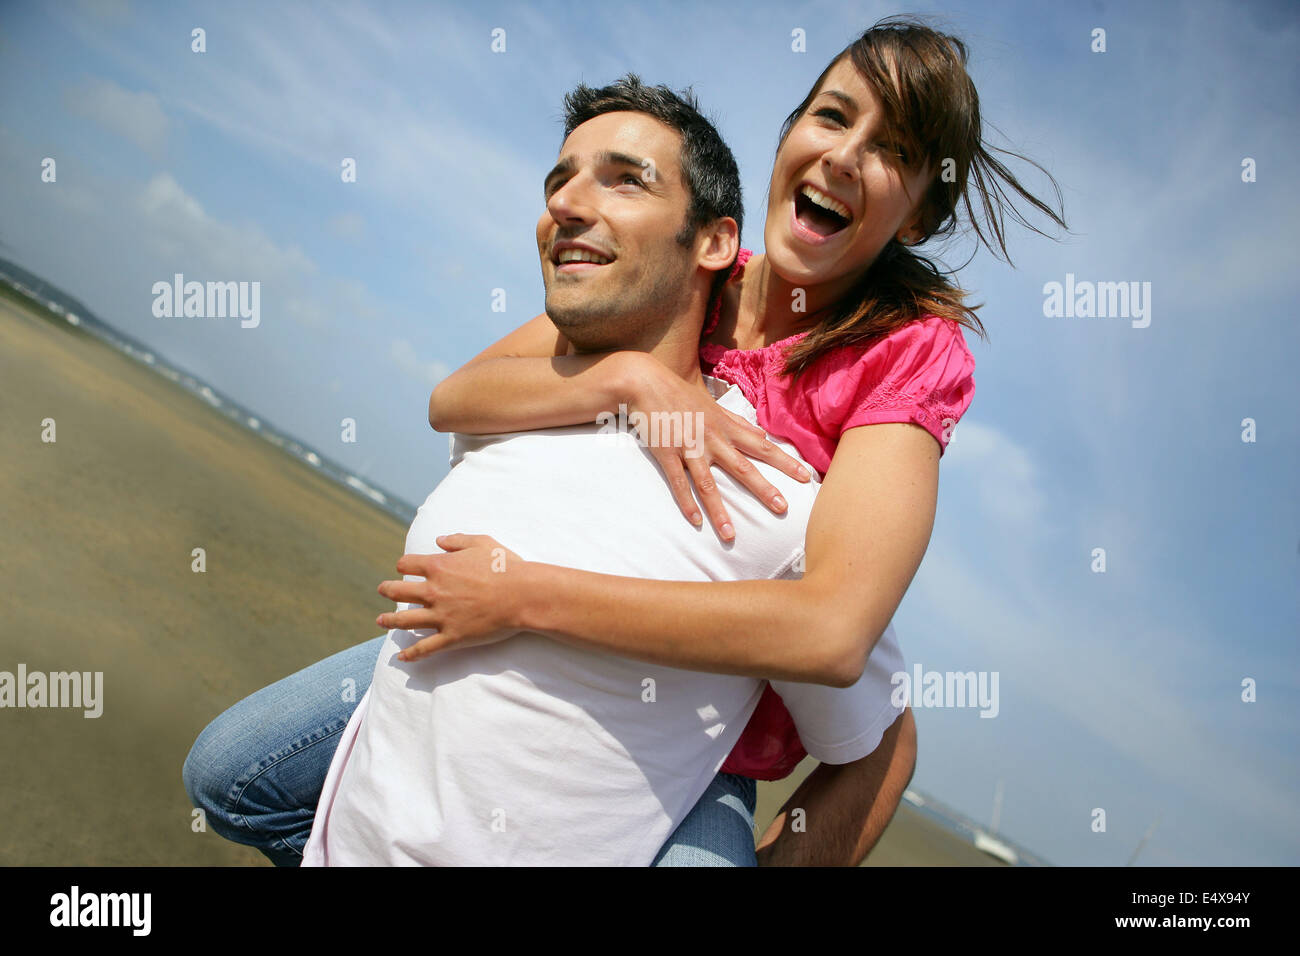 Young couple enjoying piggyback ride isolated on gray background Stock  Photo - Alamy